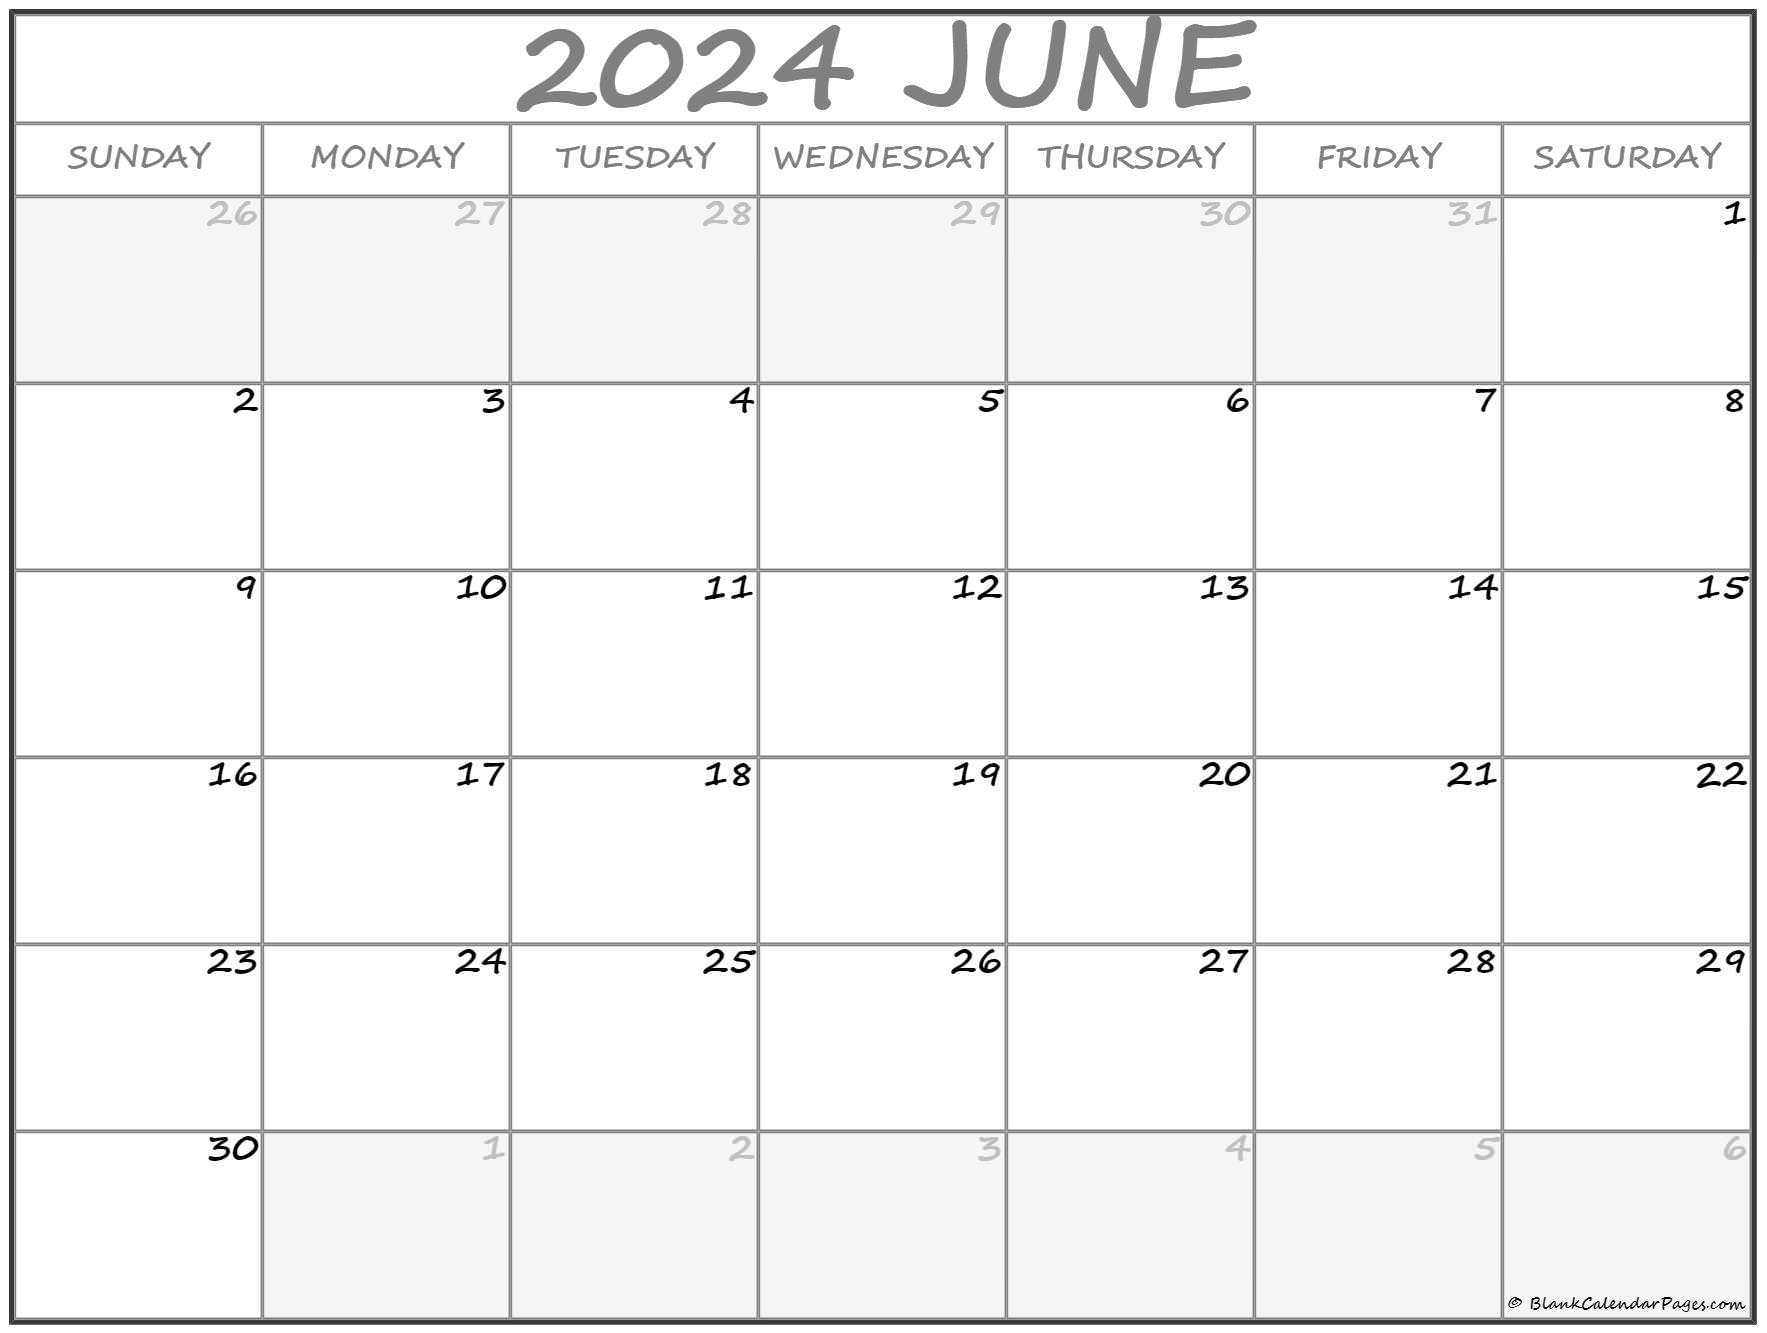 Календарь на 2024 часы работы. Календарь 2024. Страницы календаря на 2024 году. Американский календарь 2024. Календарь 2024 картинки.